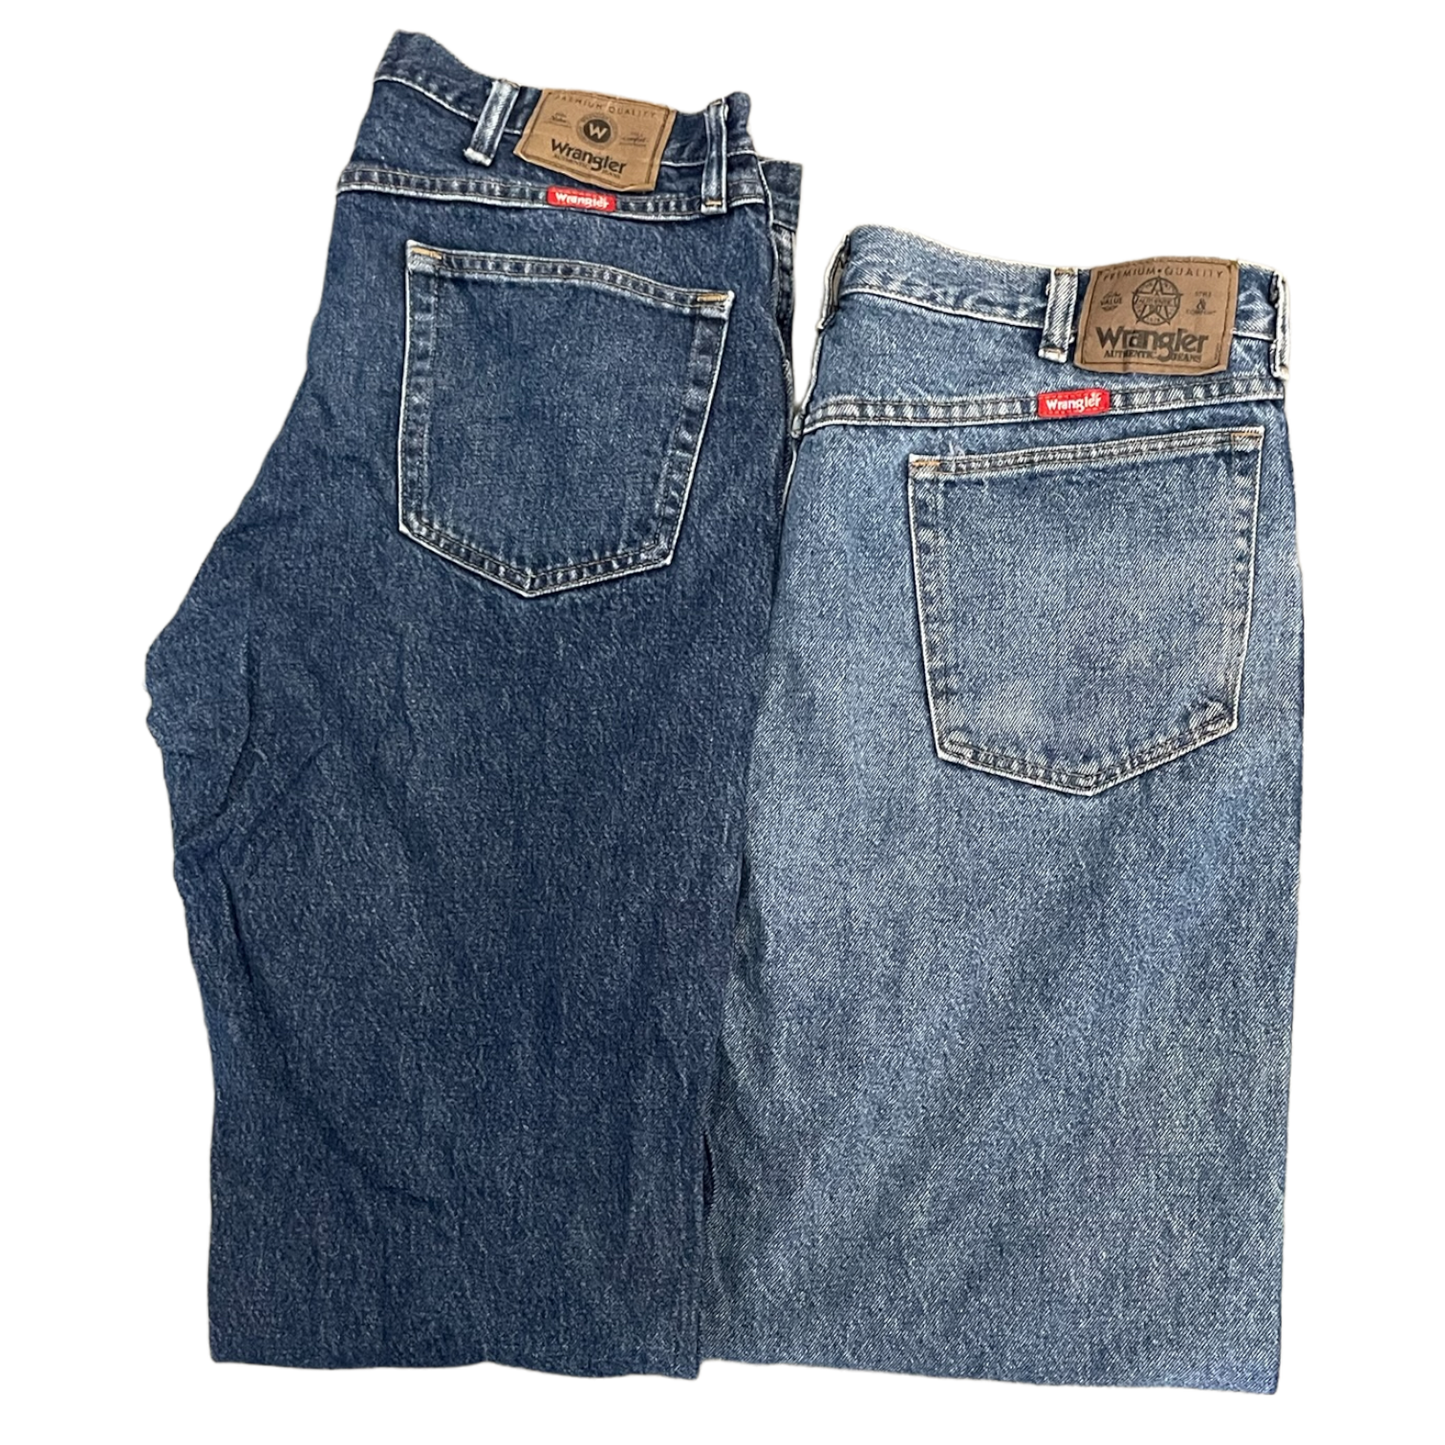 Women's Wrangler Jeans Intro Pack